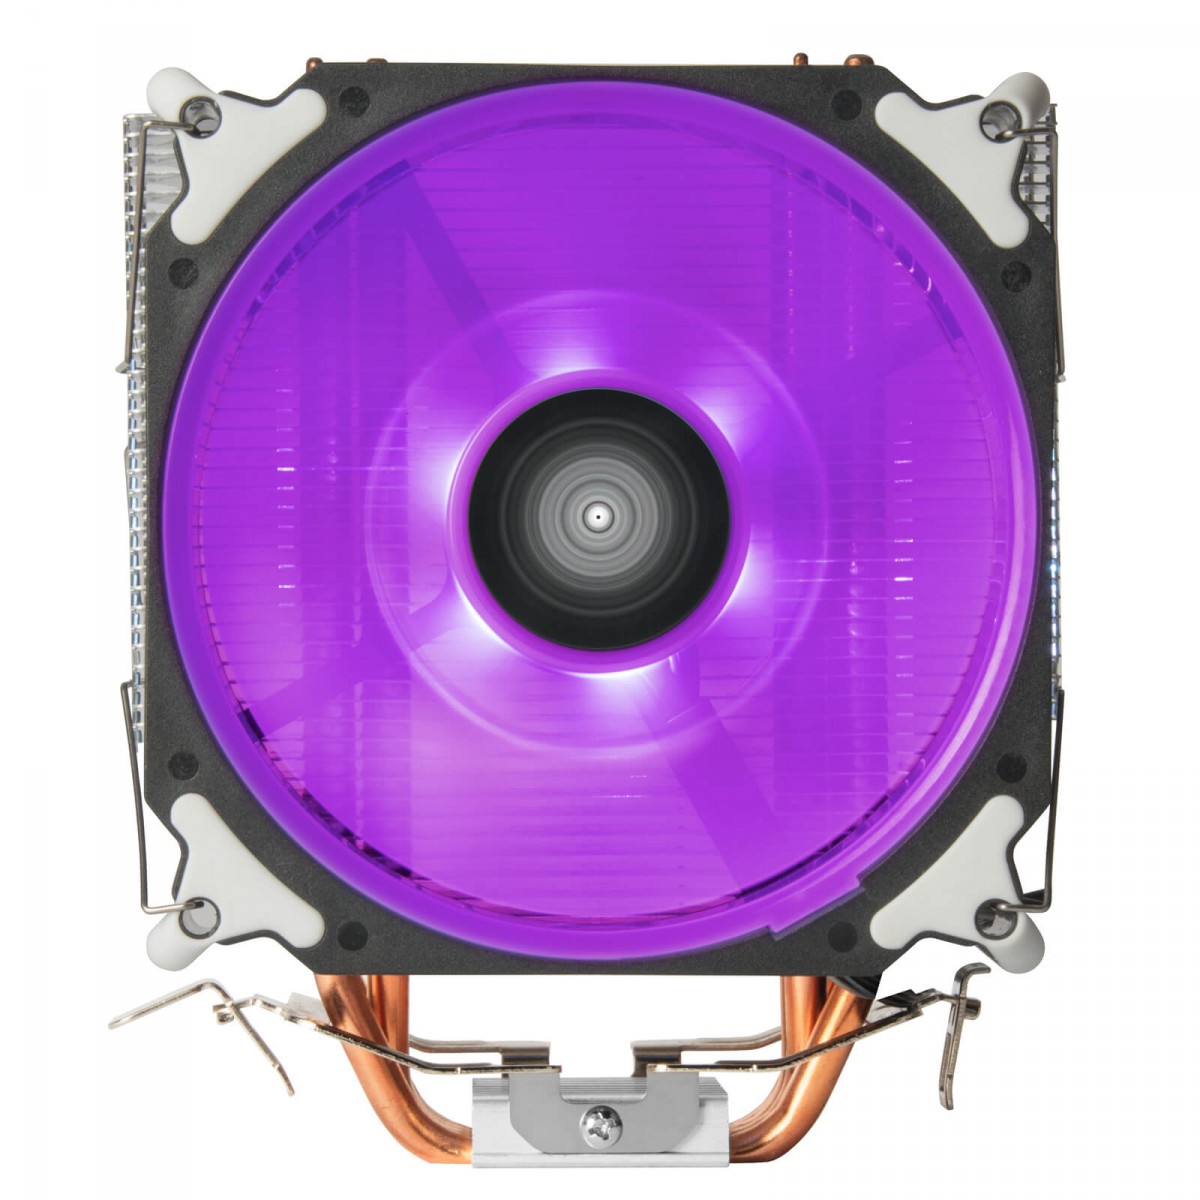 Cooler para Processador SilverStone AR12, RGB, 120mm, Intel-AMD, SST-AR12-RGB